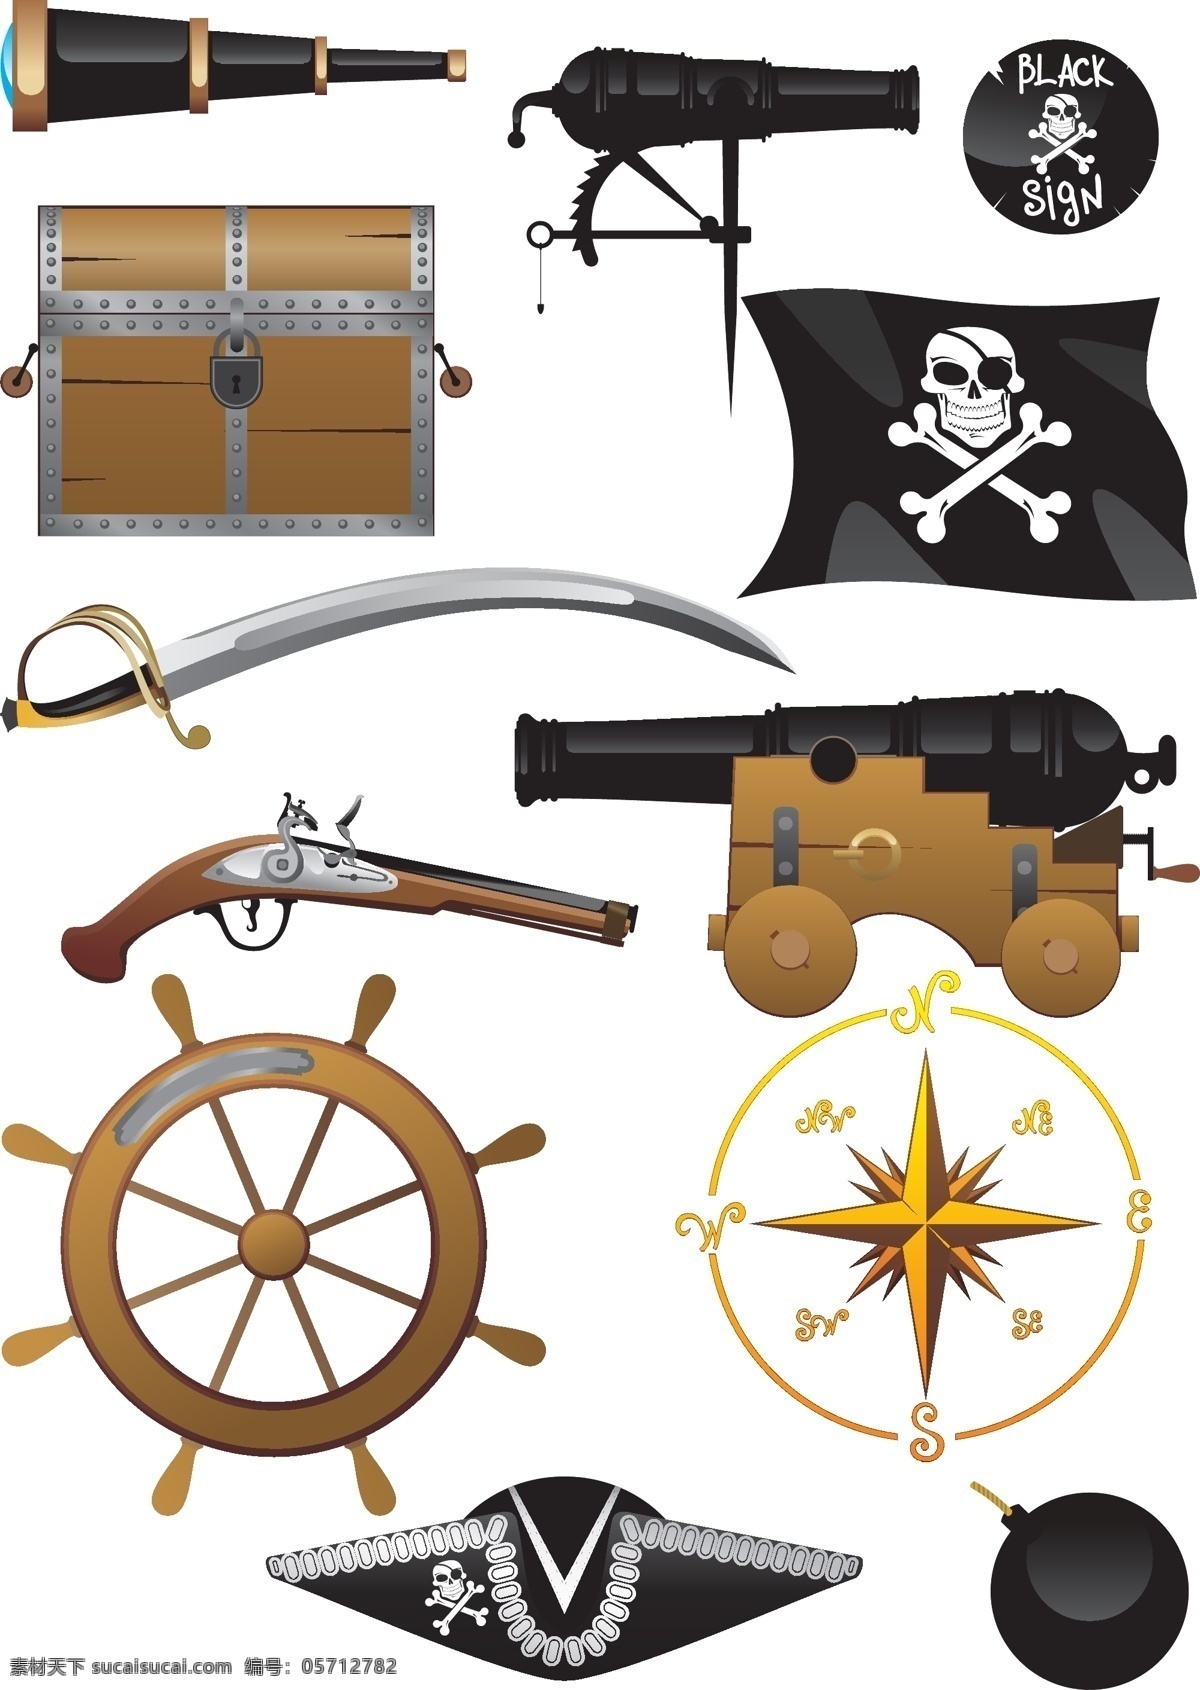 海盗 装备 用品 矢量 海盗船 海贼 旗 指南针 望远镜 宝 箱 藏 火炮 长 刀 舵 帽子 炮弹 矢量图